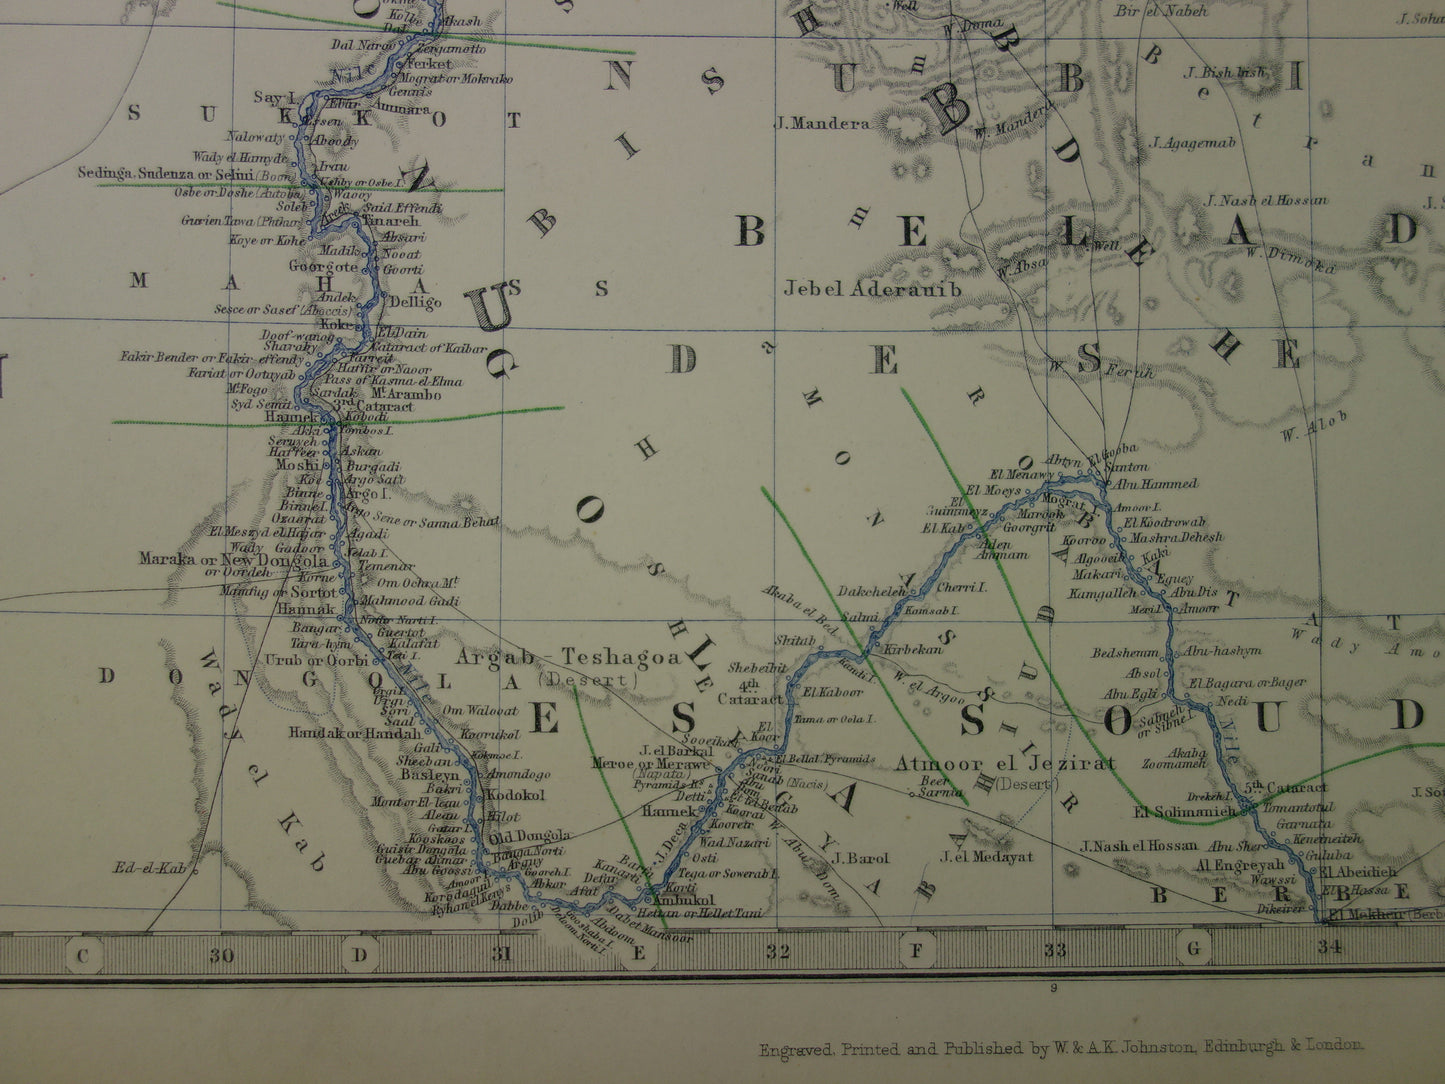 EGYPTE oude kaart van Egypte uit 1878 Grote originele antieke Engelse kaart Sinaï Sudan